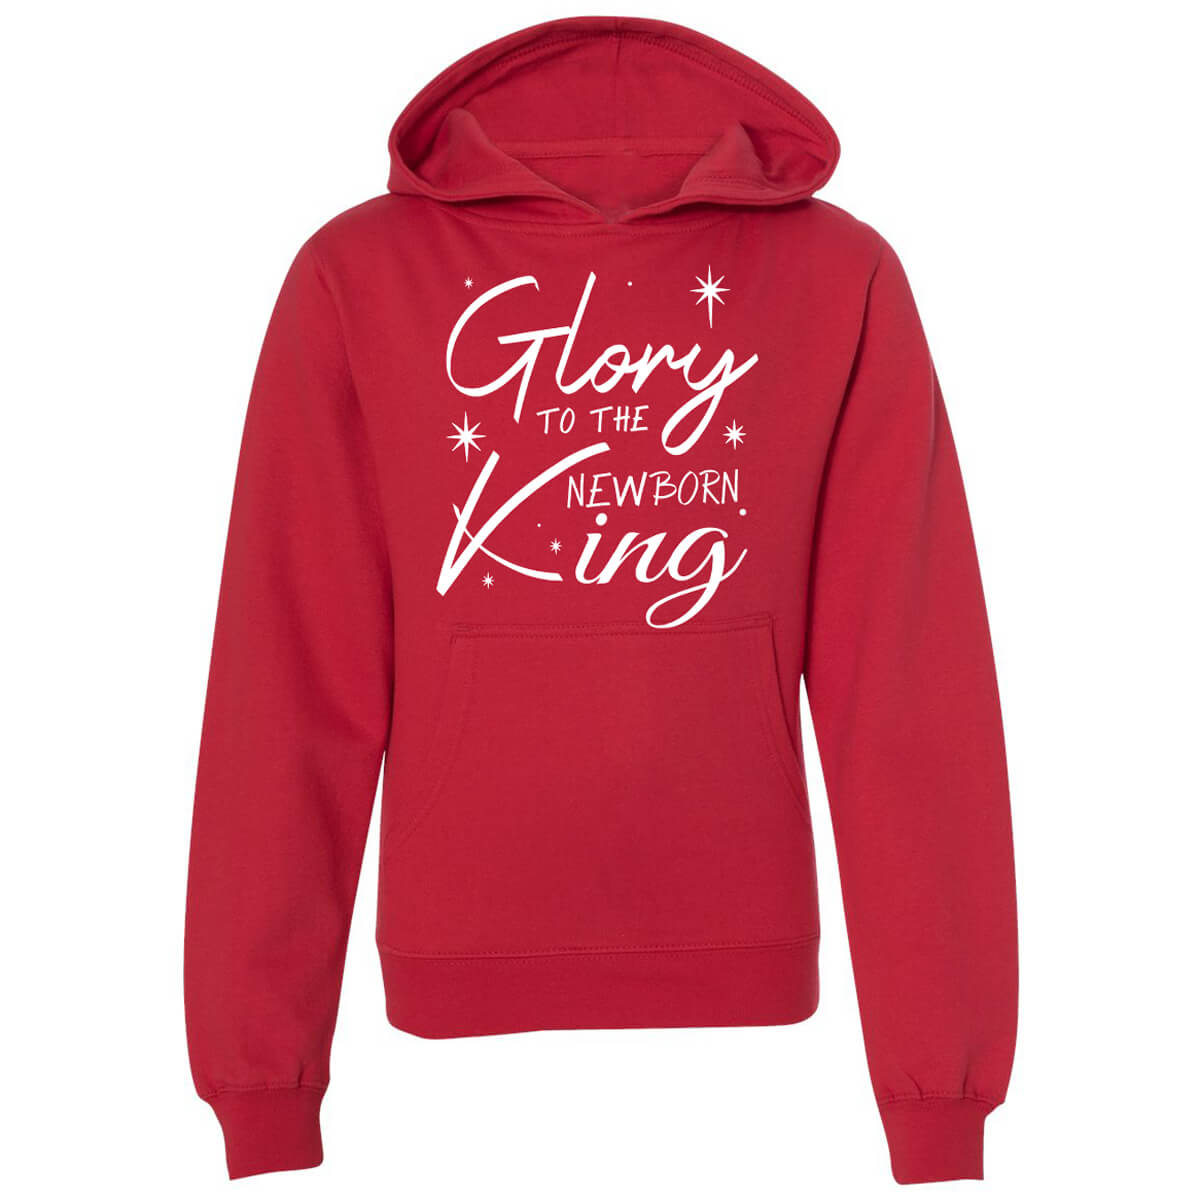 Glory To The Newborn King Youth Sweatshirt Hoodie